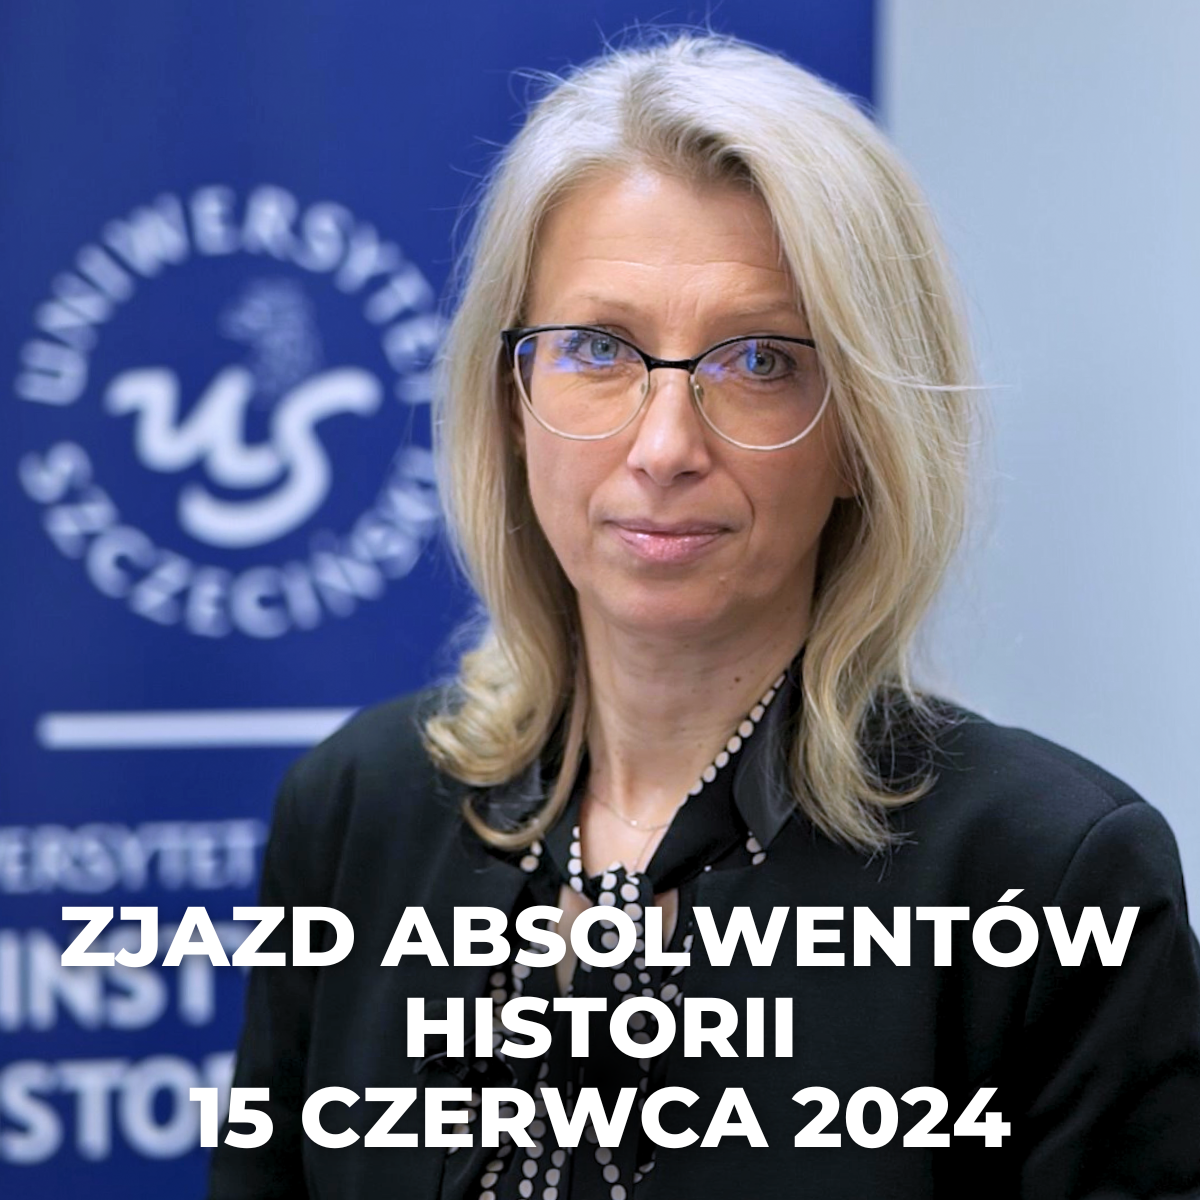 Zjazd Absolwentów Historii w Szczecinie, 15 czerwca 2024 r.